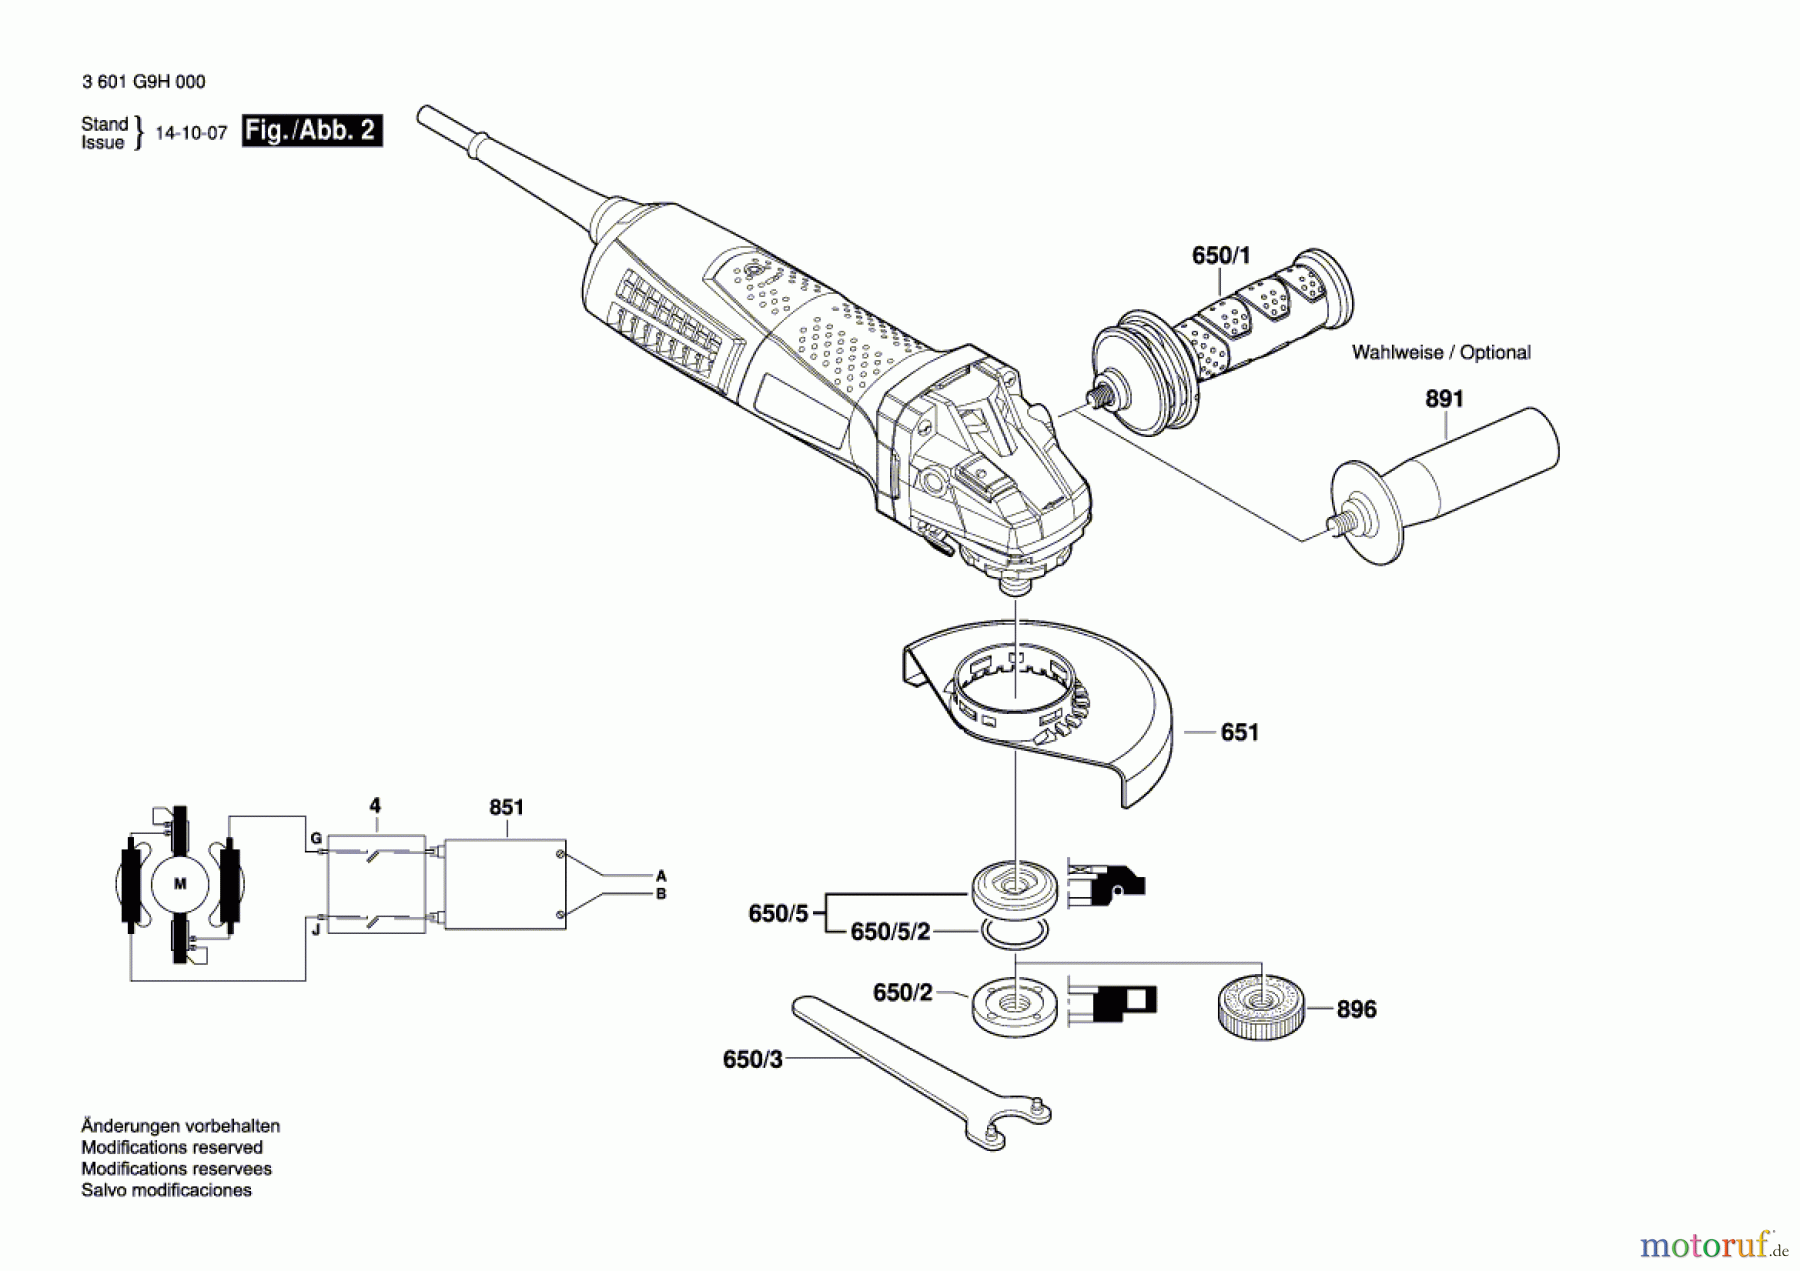  Bosch Werkzeug Winkelschleifer GWS 17-125 CIT Seite 2